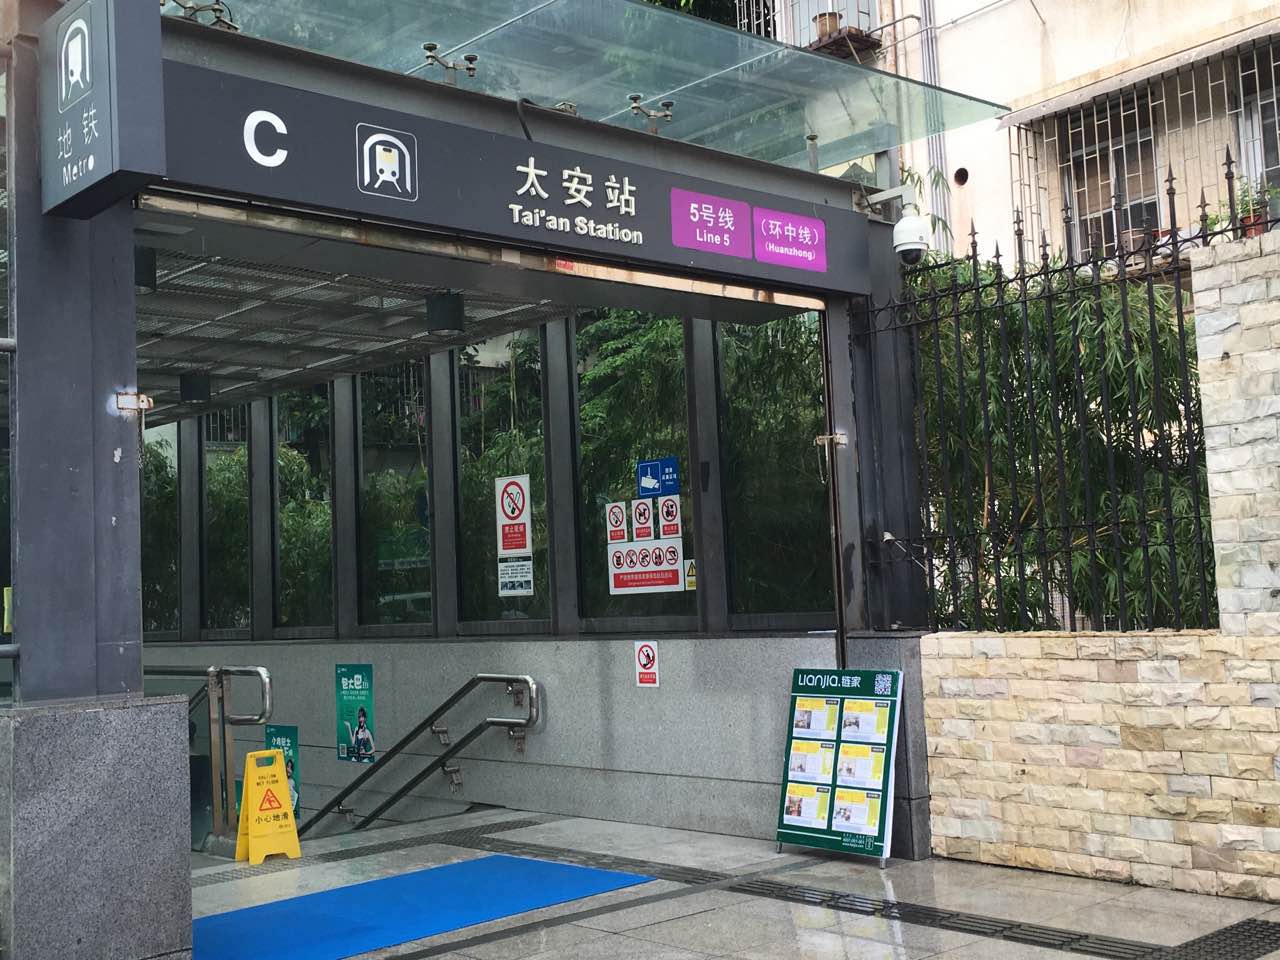 深圳购房建议 当前问题  百仕达花园一期最近的地铁是5号线的太安站